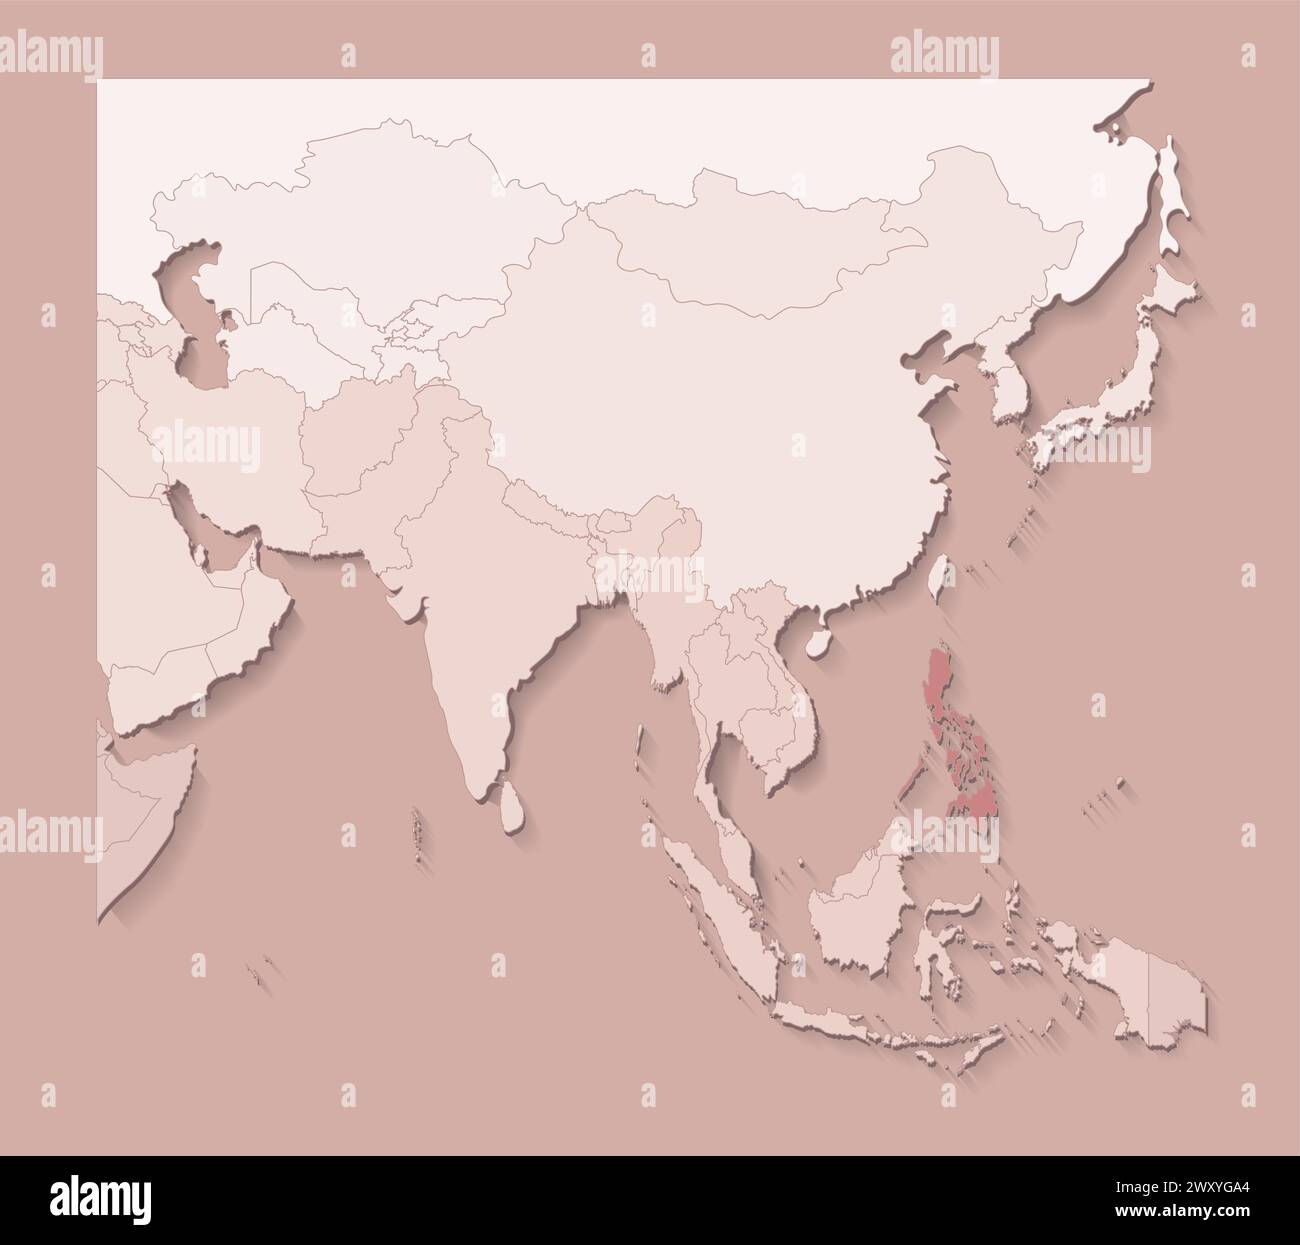 Vektor-Illustration mit asiatischen Gebieten mit Grenzen von staaten und markiertem Land Philippinen. Politische Karte in braunen Farben mit Regionen. Beige Backgrou Stock Vektor